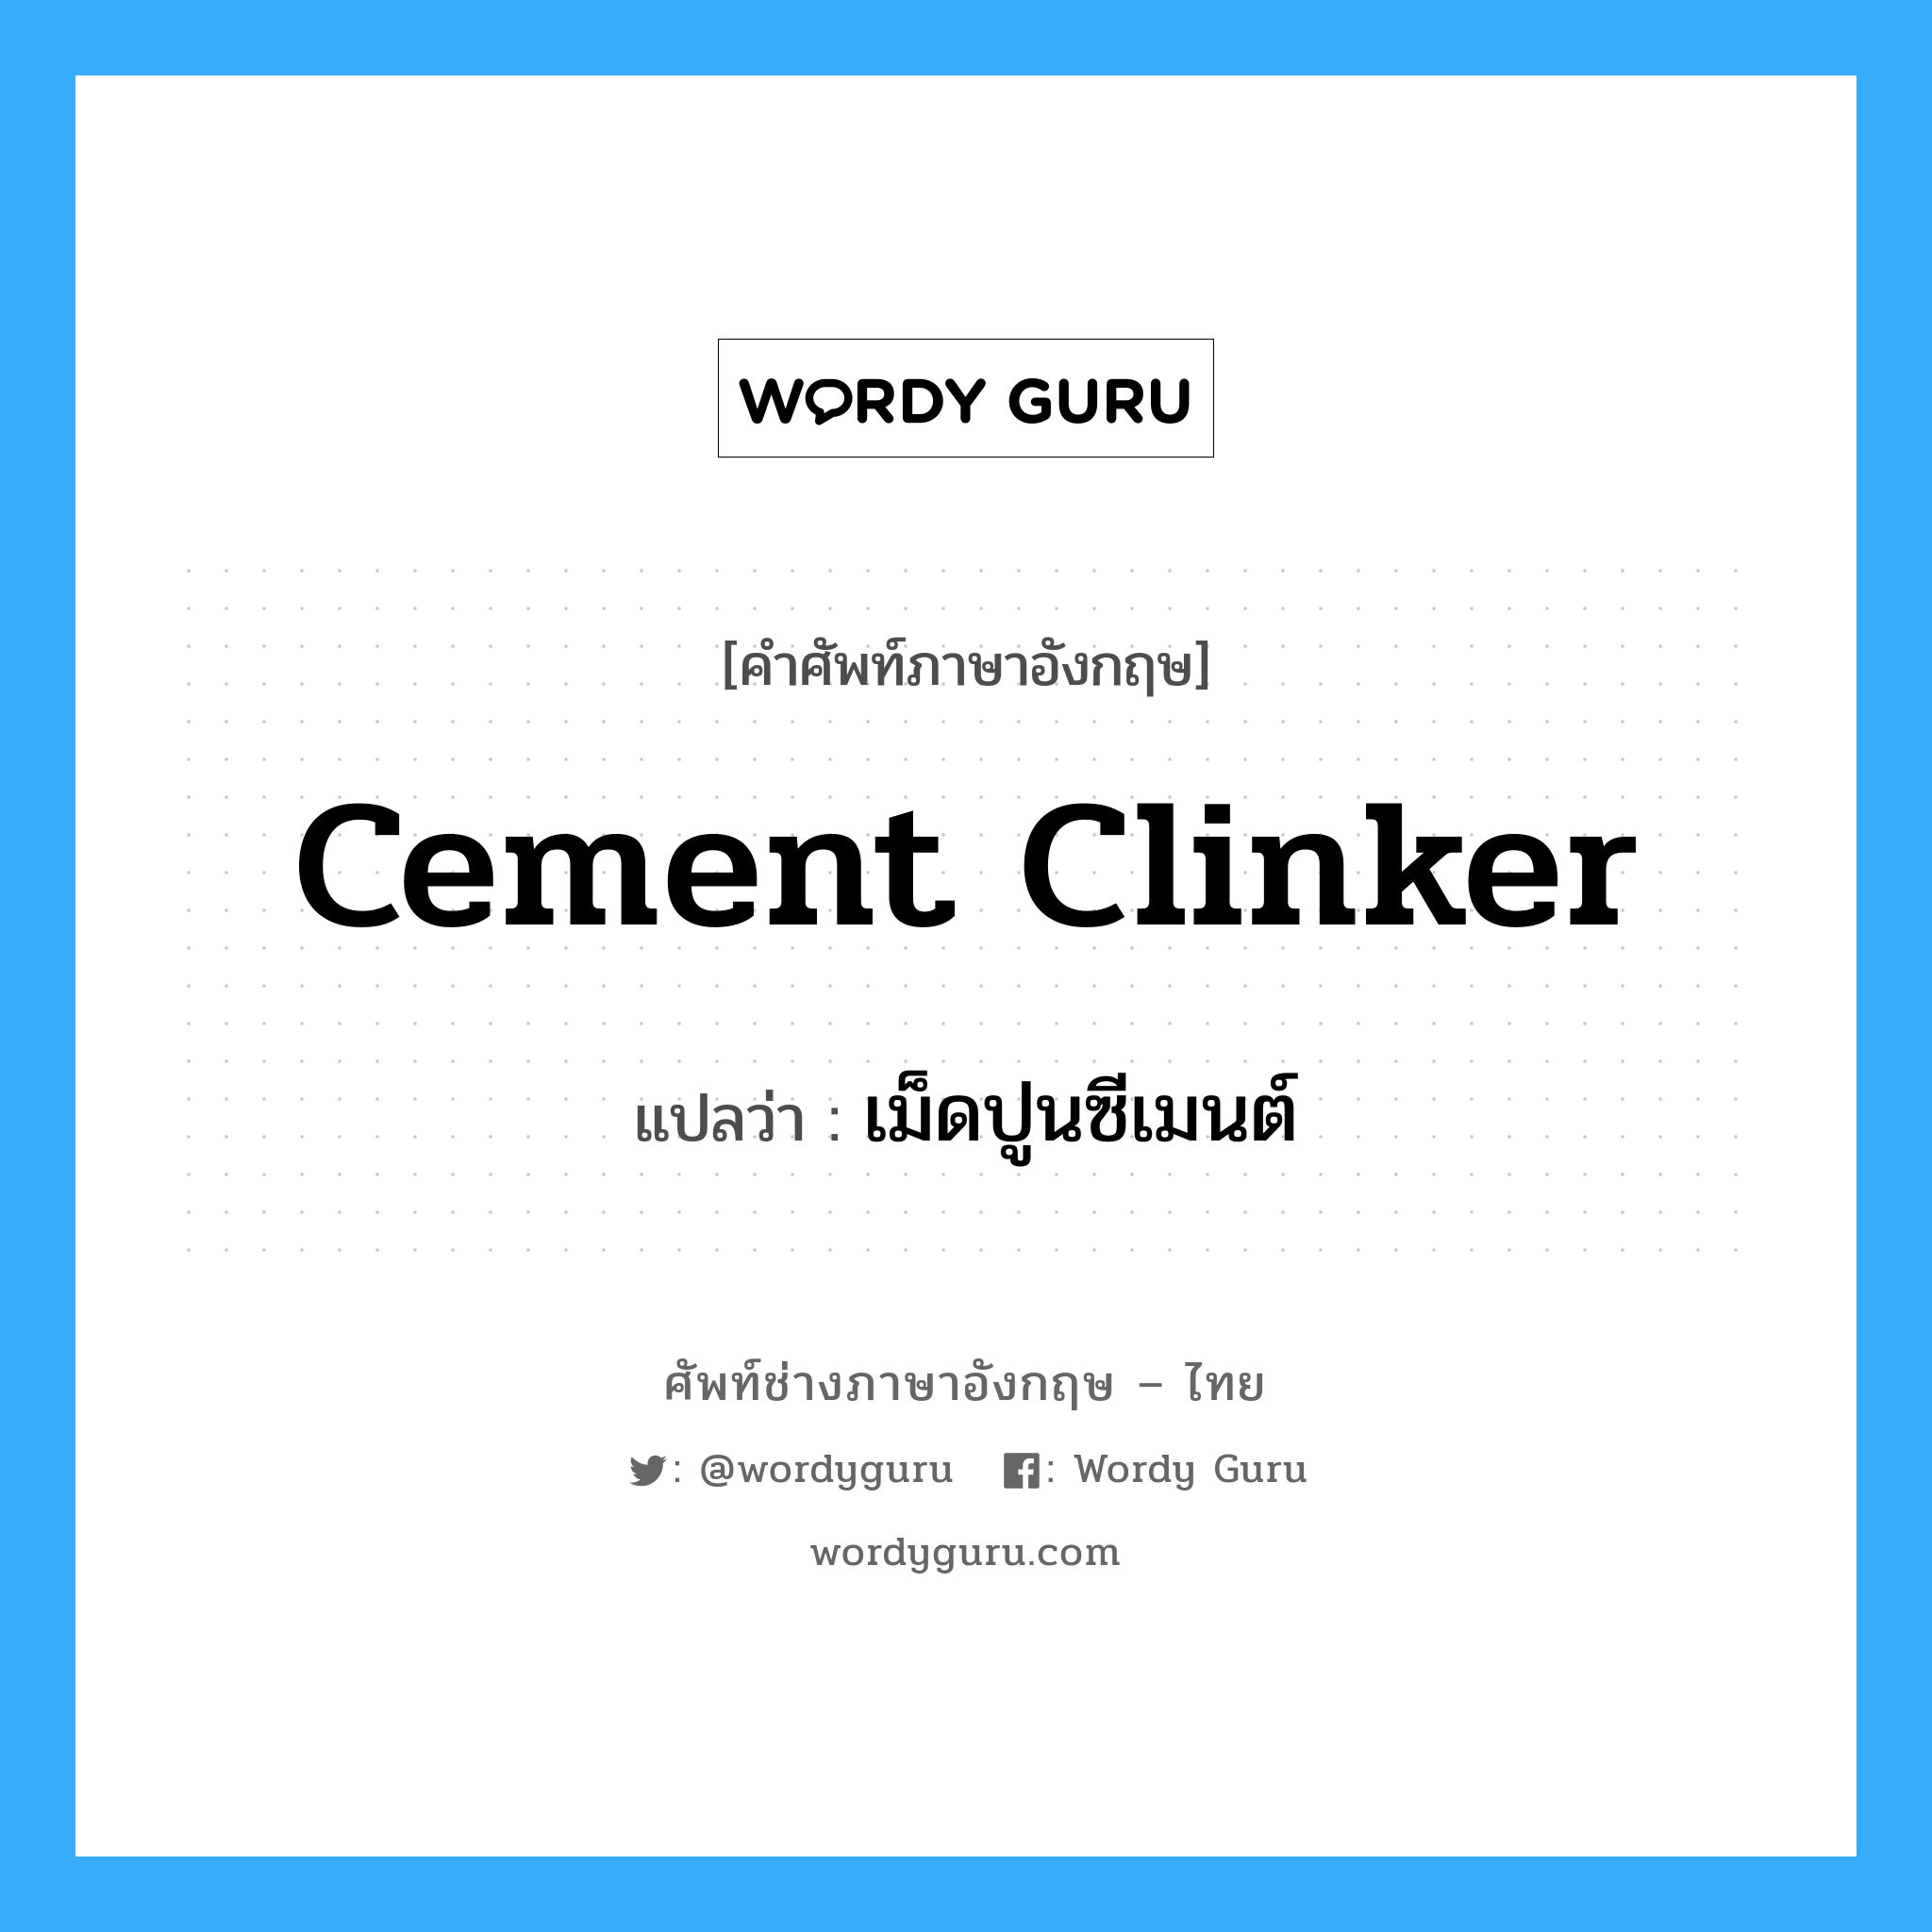 เม็ดปูนซีเมนต์ ภาษาอังกฤษ?, คำศัพท์ช่างภาษาอังกฤษ - ไทย เม็ดปูนซีเมนต์ คำศัพท์ภาษาอังกฤษ เม็ดปูนซีเมนต์ แปลว่า cement clinker